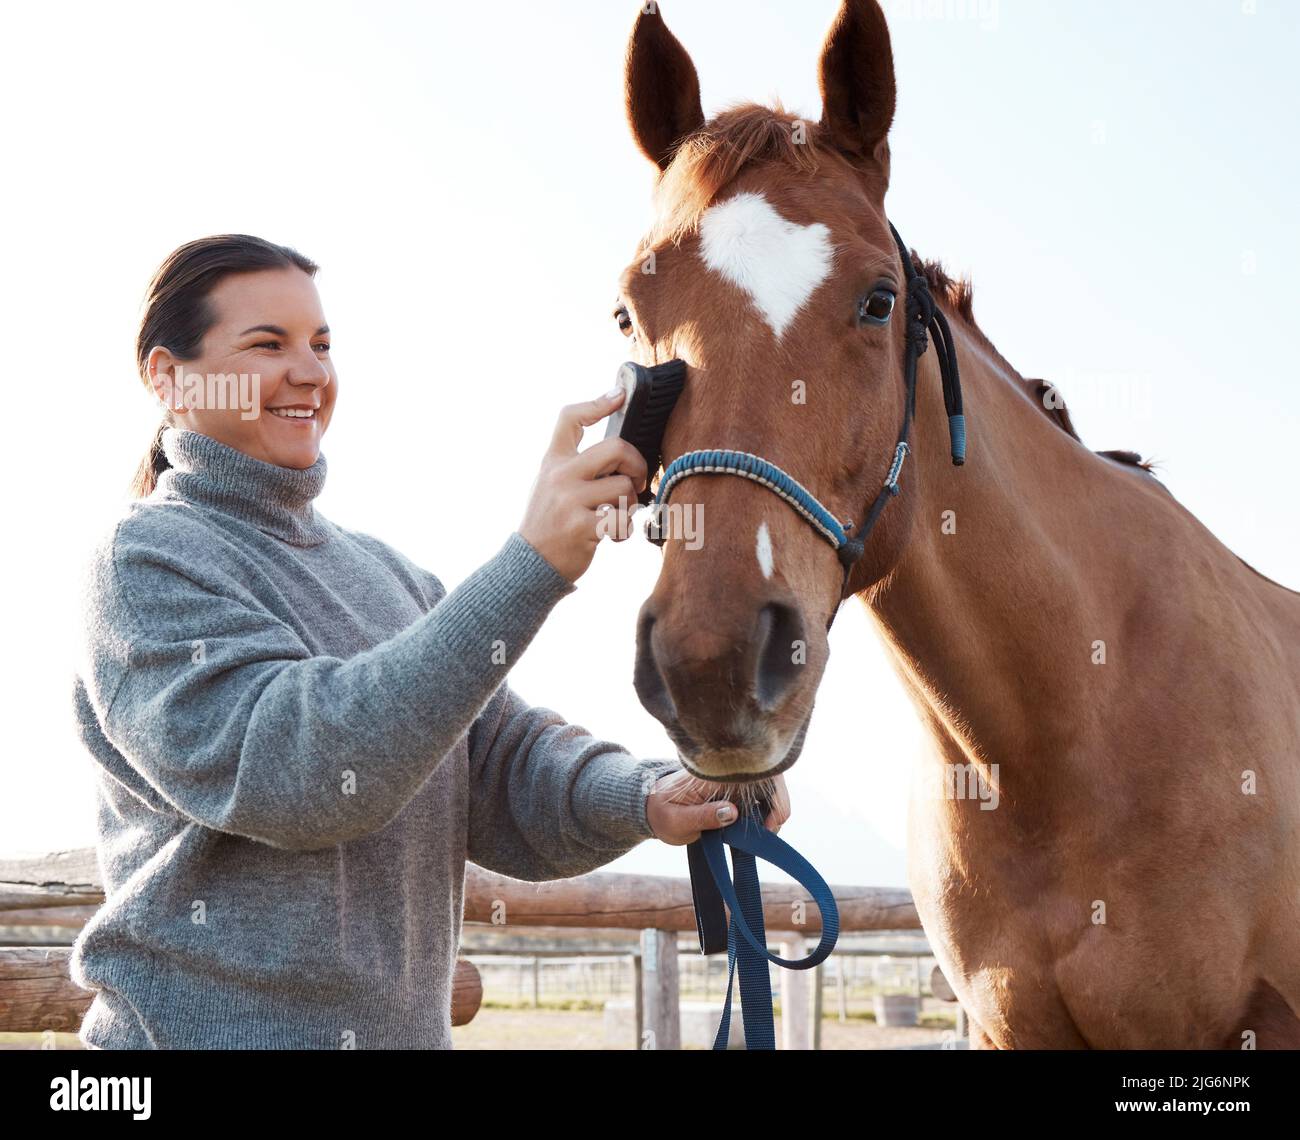 Es gibt nichts lebendiges, ganz so schön wie ein Pferd. Aufnahme einer attraktiven jungen Frau, die ihr Pferd auf einer Ranch putzt. Stockfoto